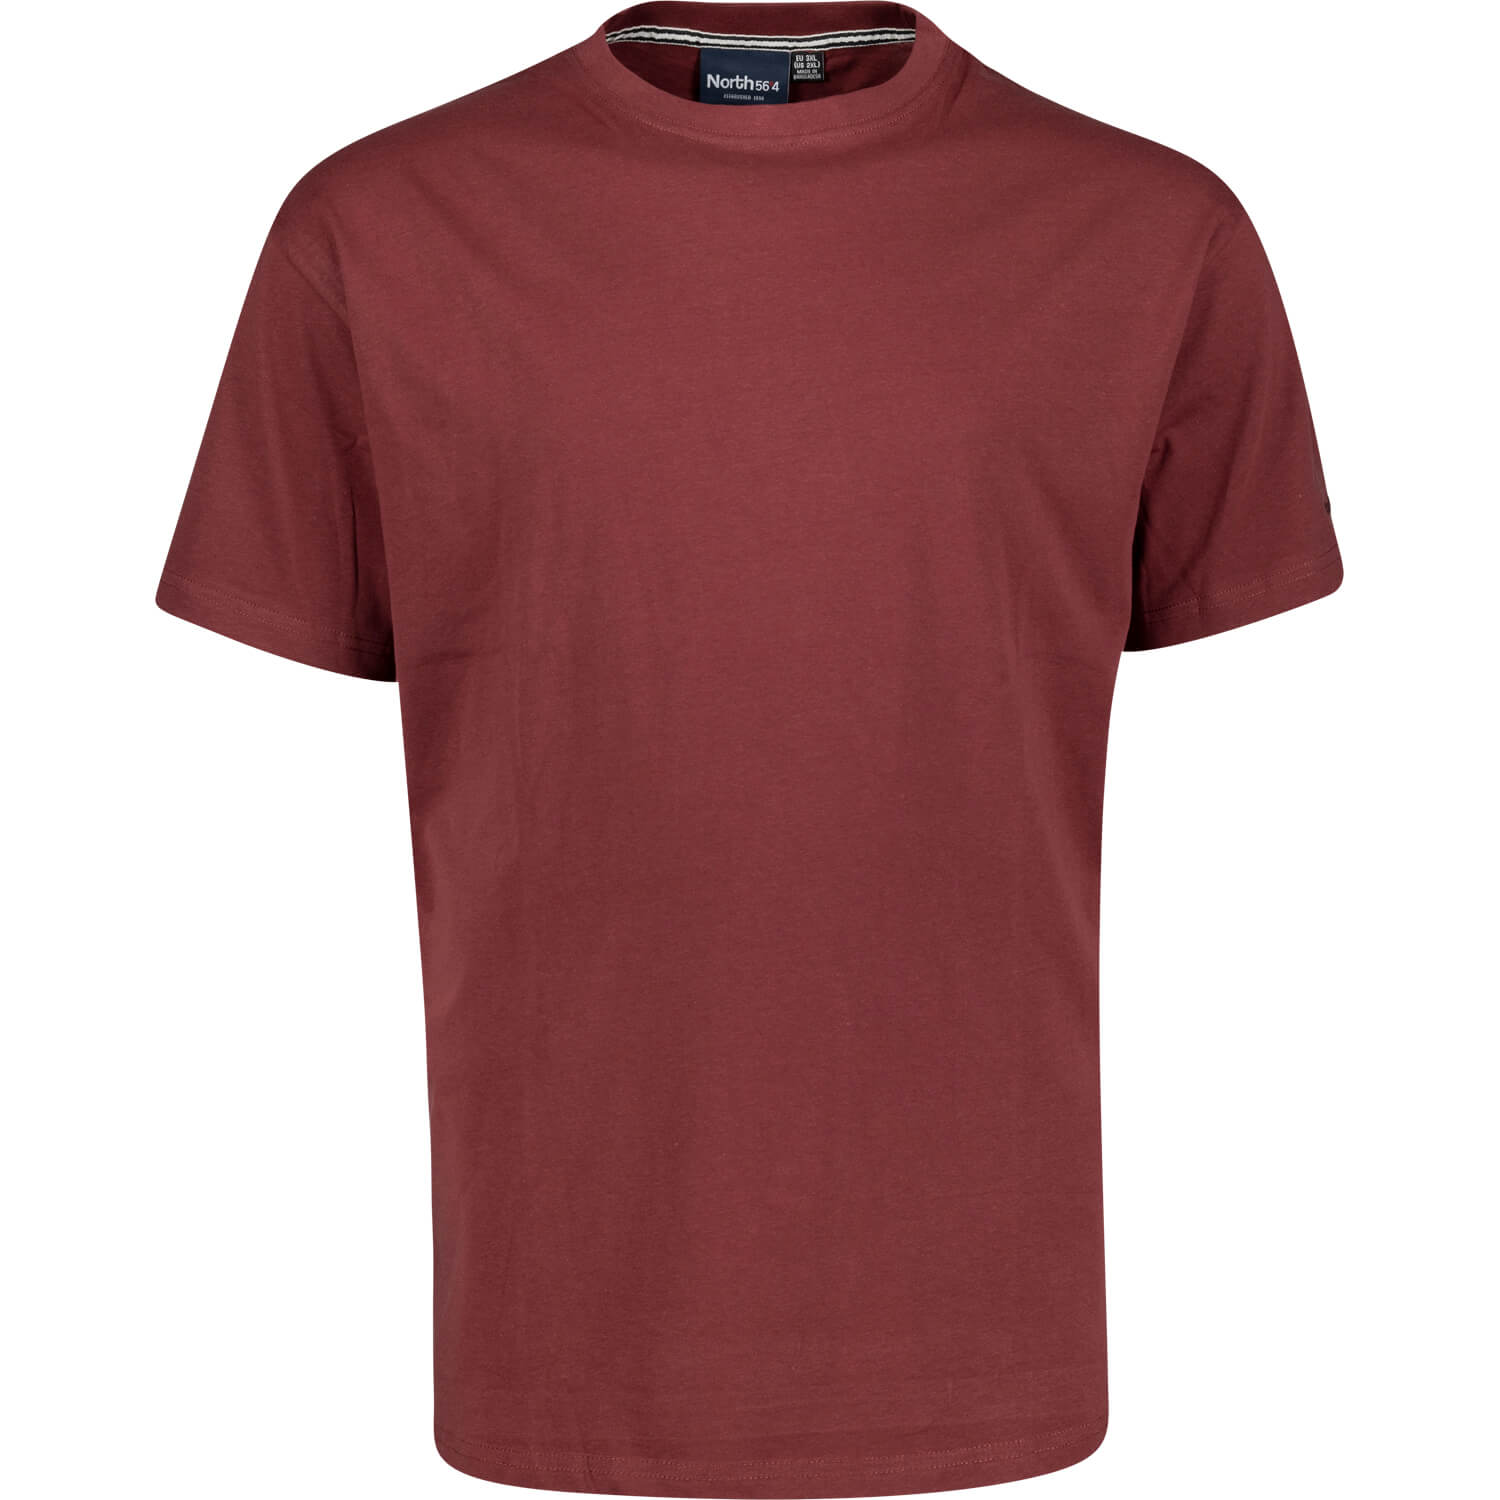 Basic-T-Shirt in weinrot - In Übergrößen bis 8XL